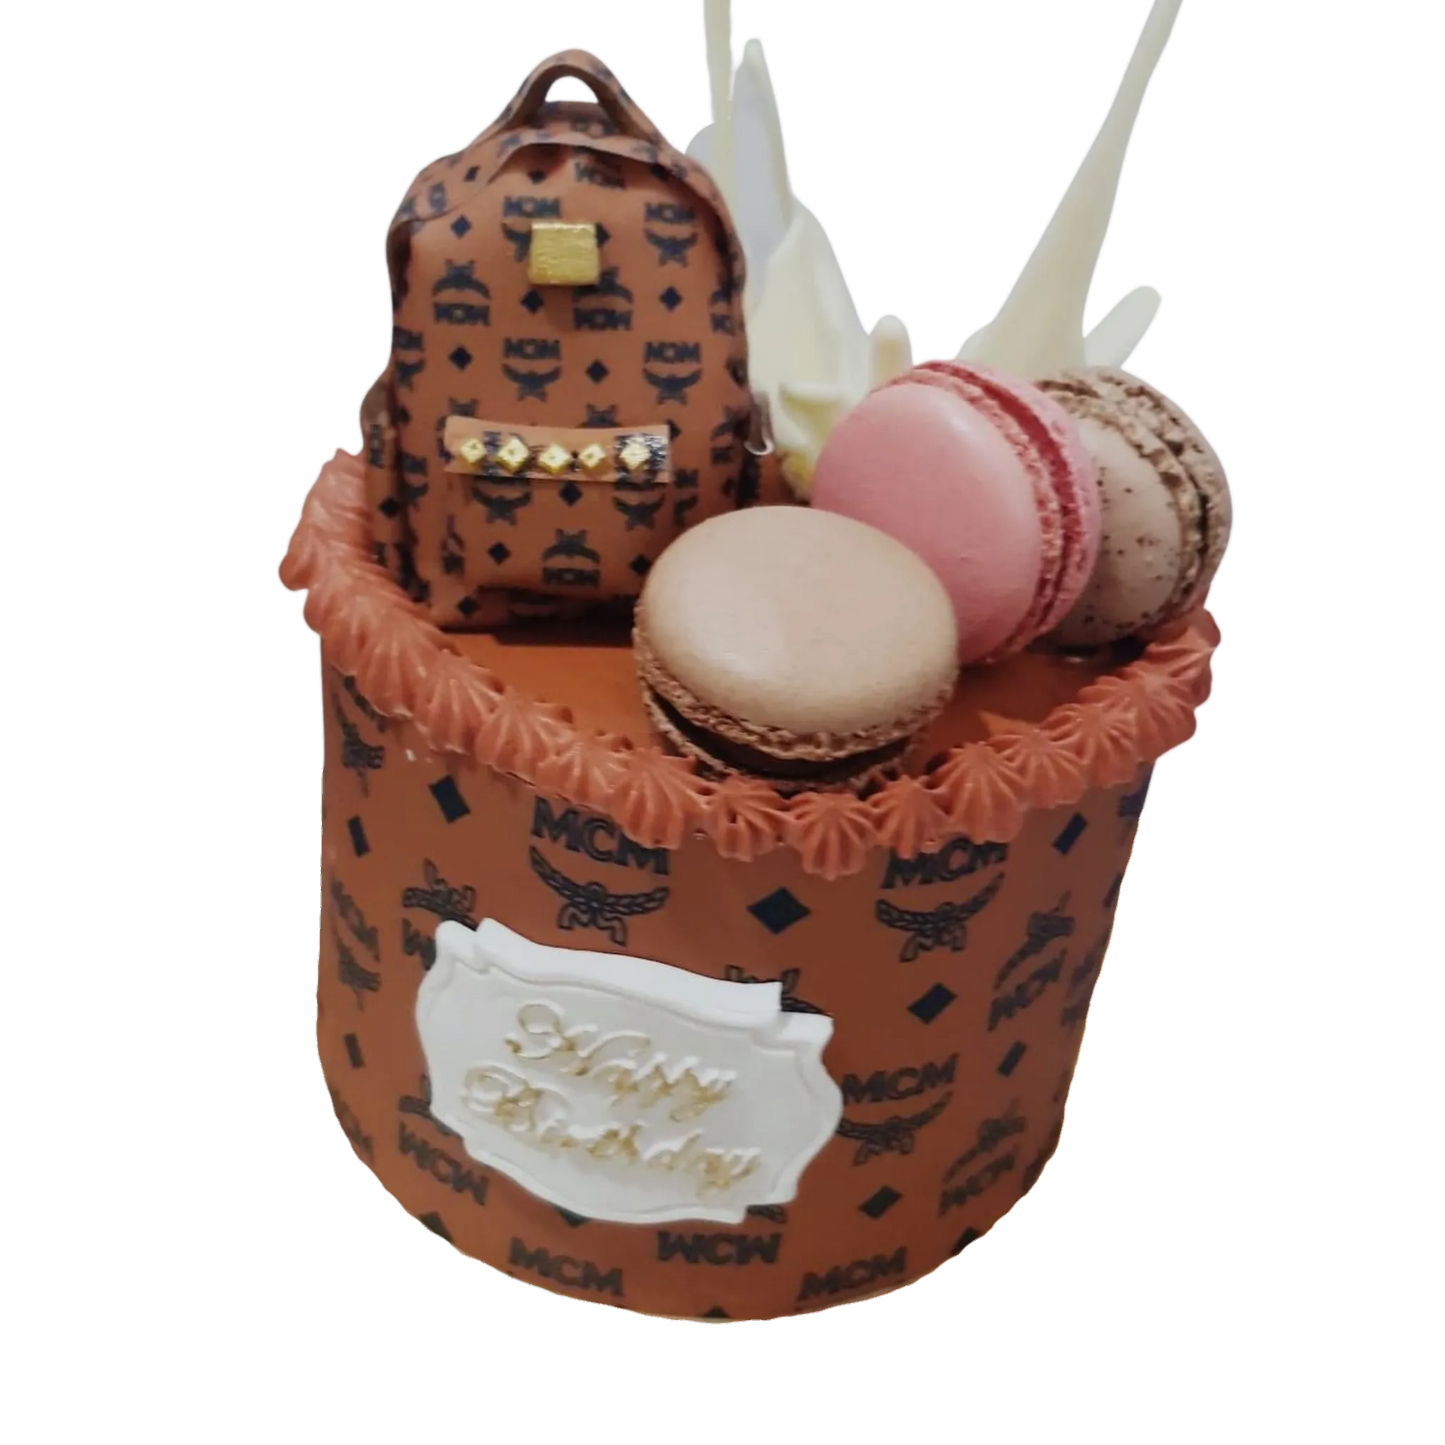 MCM Mini Bag with Macarons Themed Cake